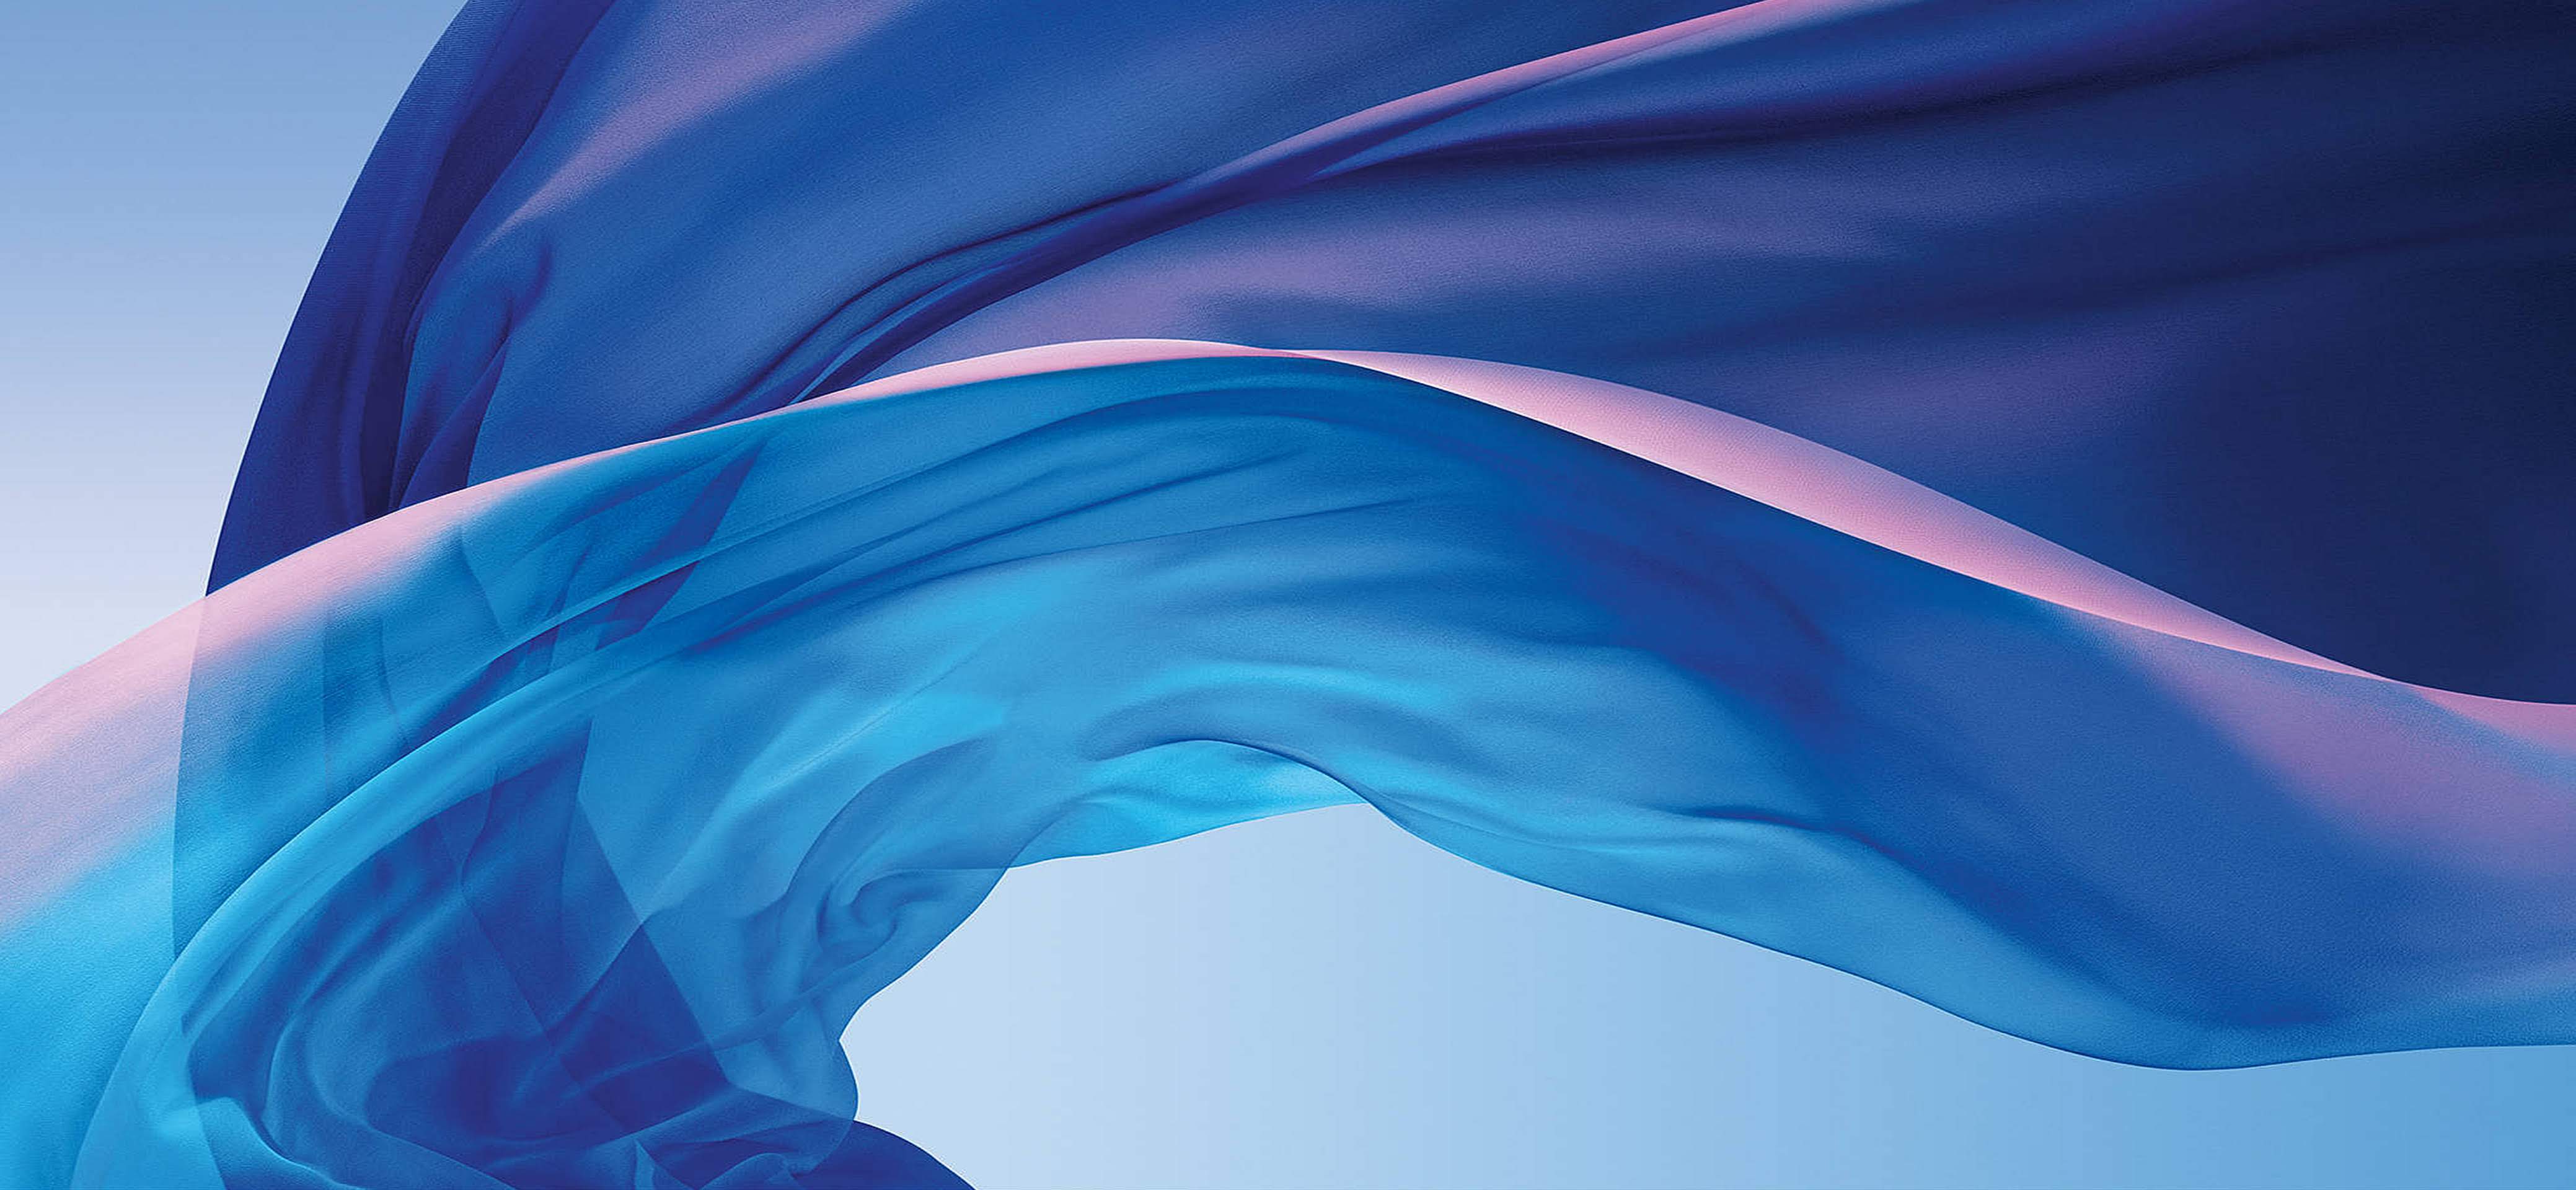 fondo de pantalla mac original,azul,agua,azul eléctrico,azul cobalto,bandera